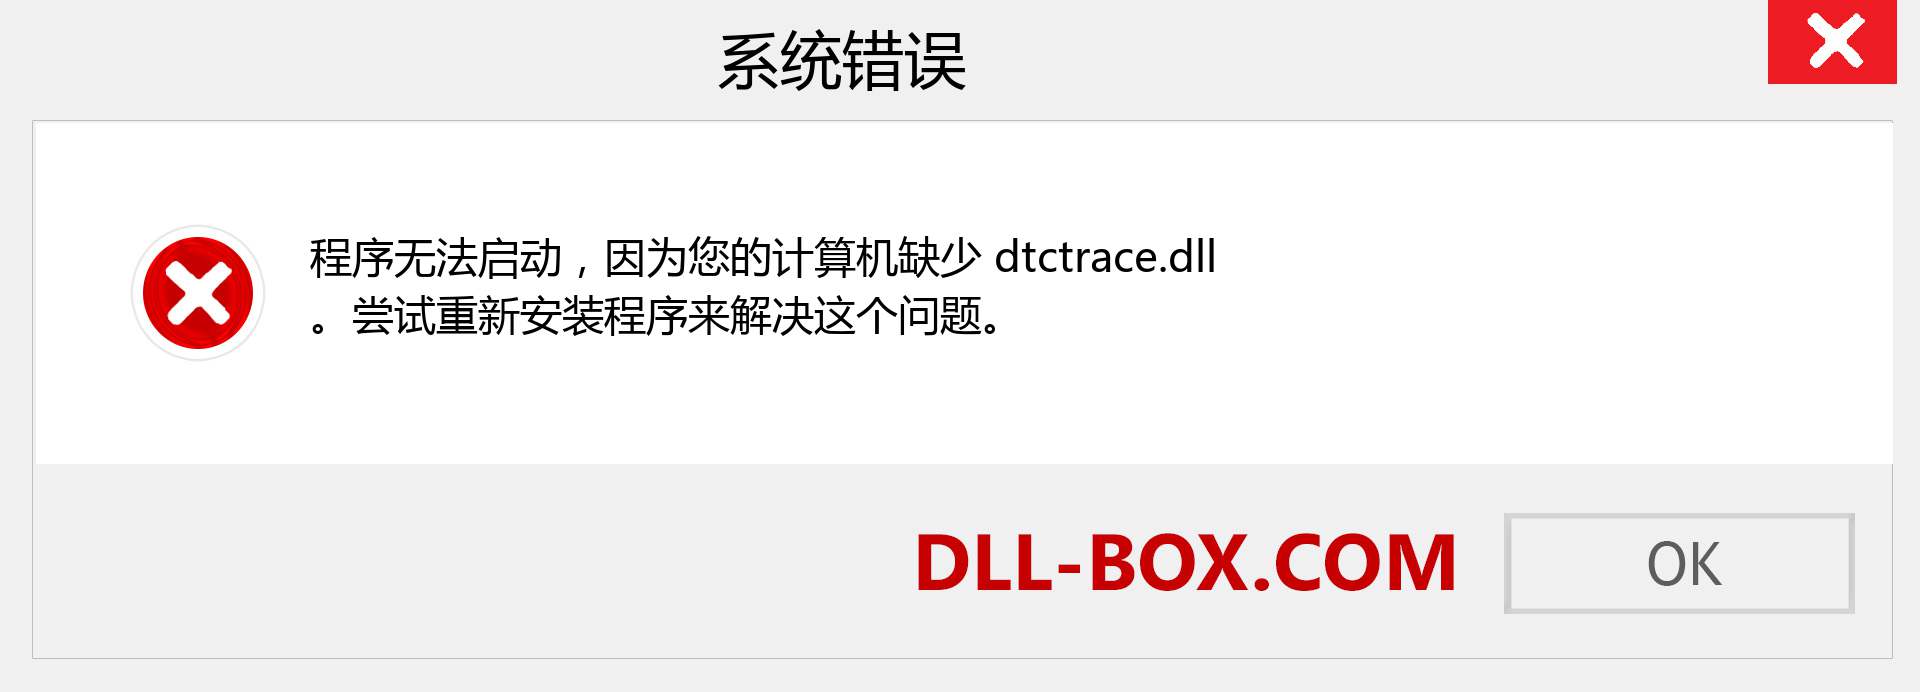 dtctrace.dll 文件丢失？。 适用于 Windows 7、8、10 的下载 - 修复 Windows、照片、图像上的 dtctrace dll 丢失错误